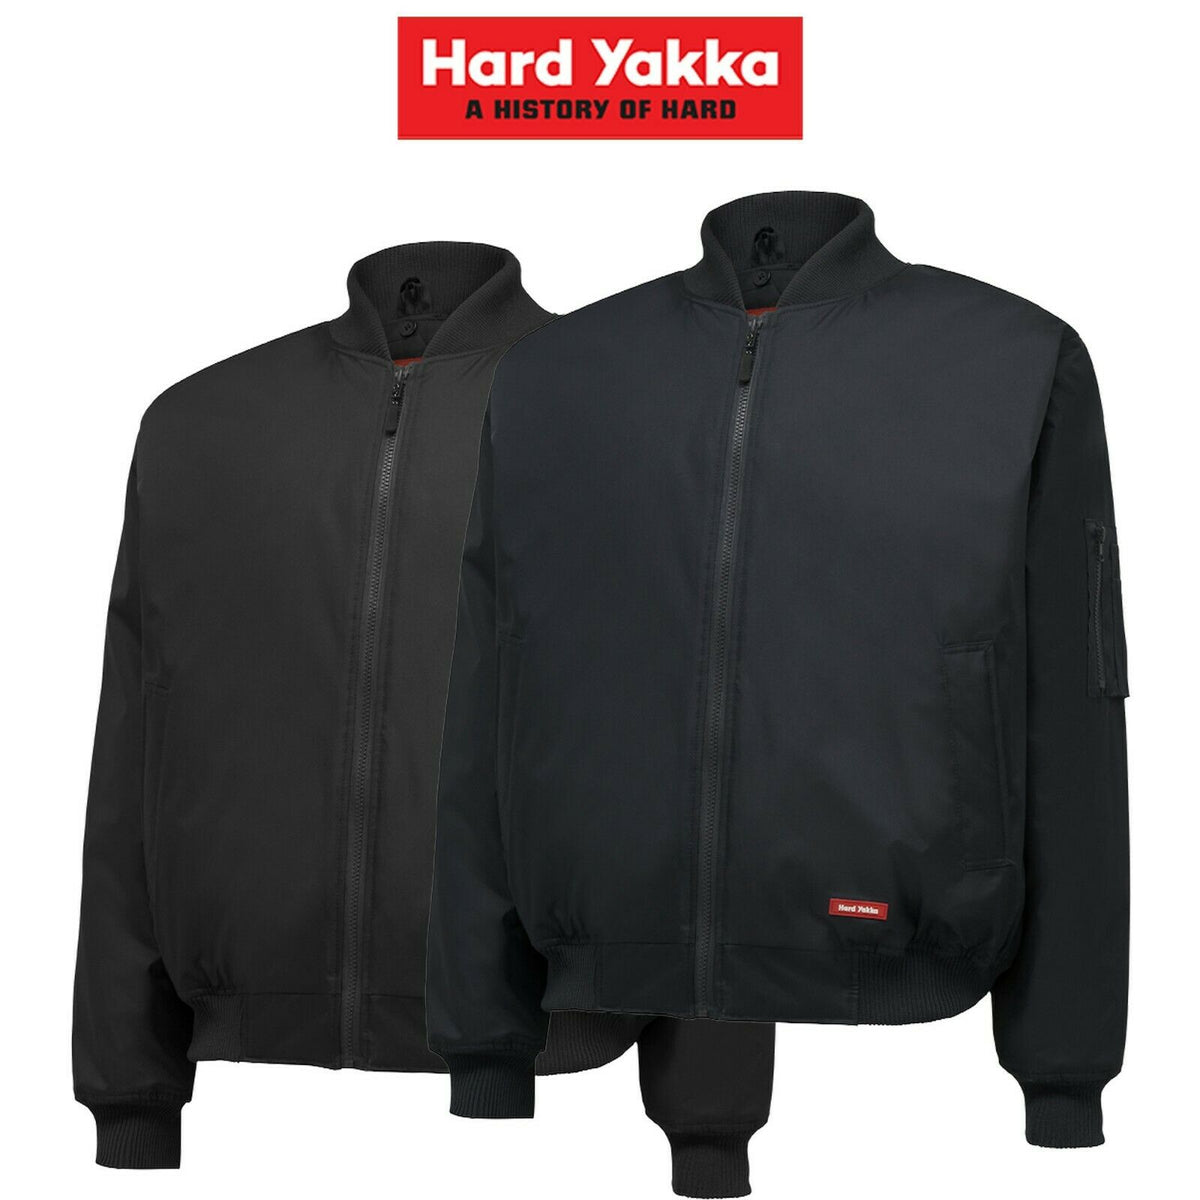 Hard Yakka Bomber Jacket Core Winter Work Hooded Quilted Waterproof Y06680